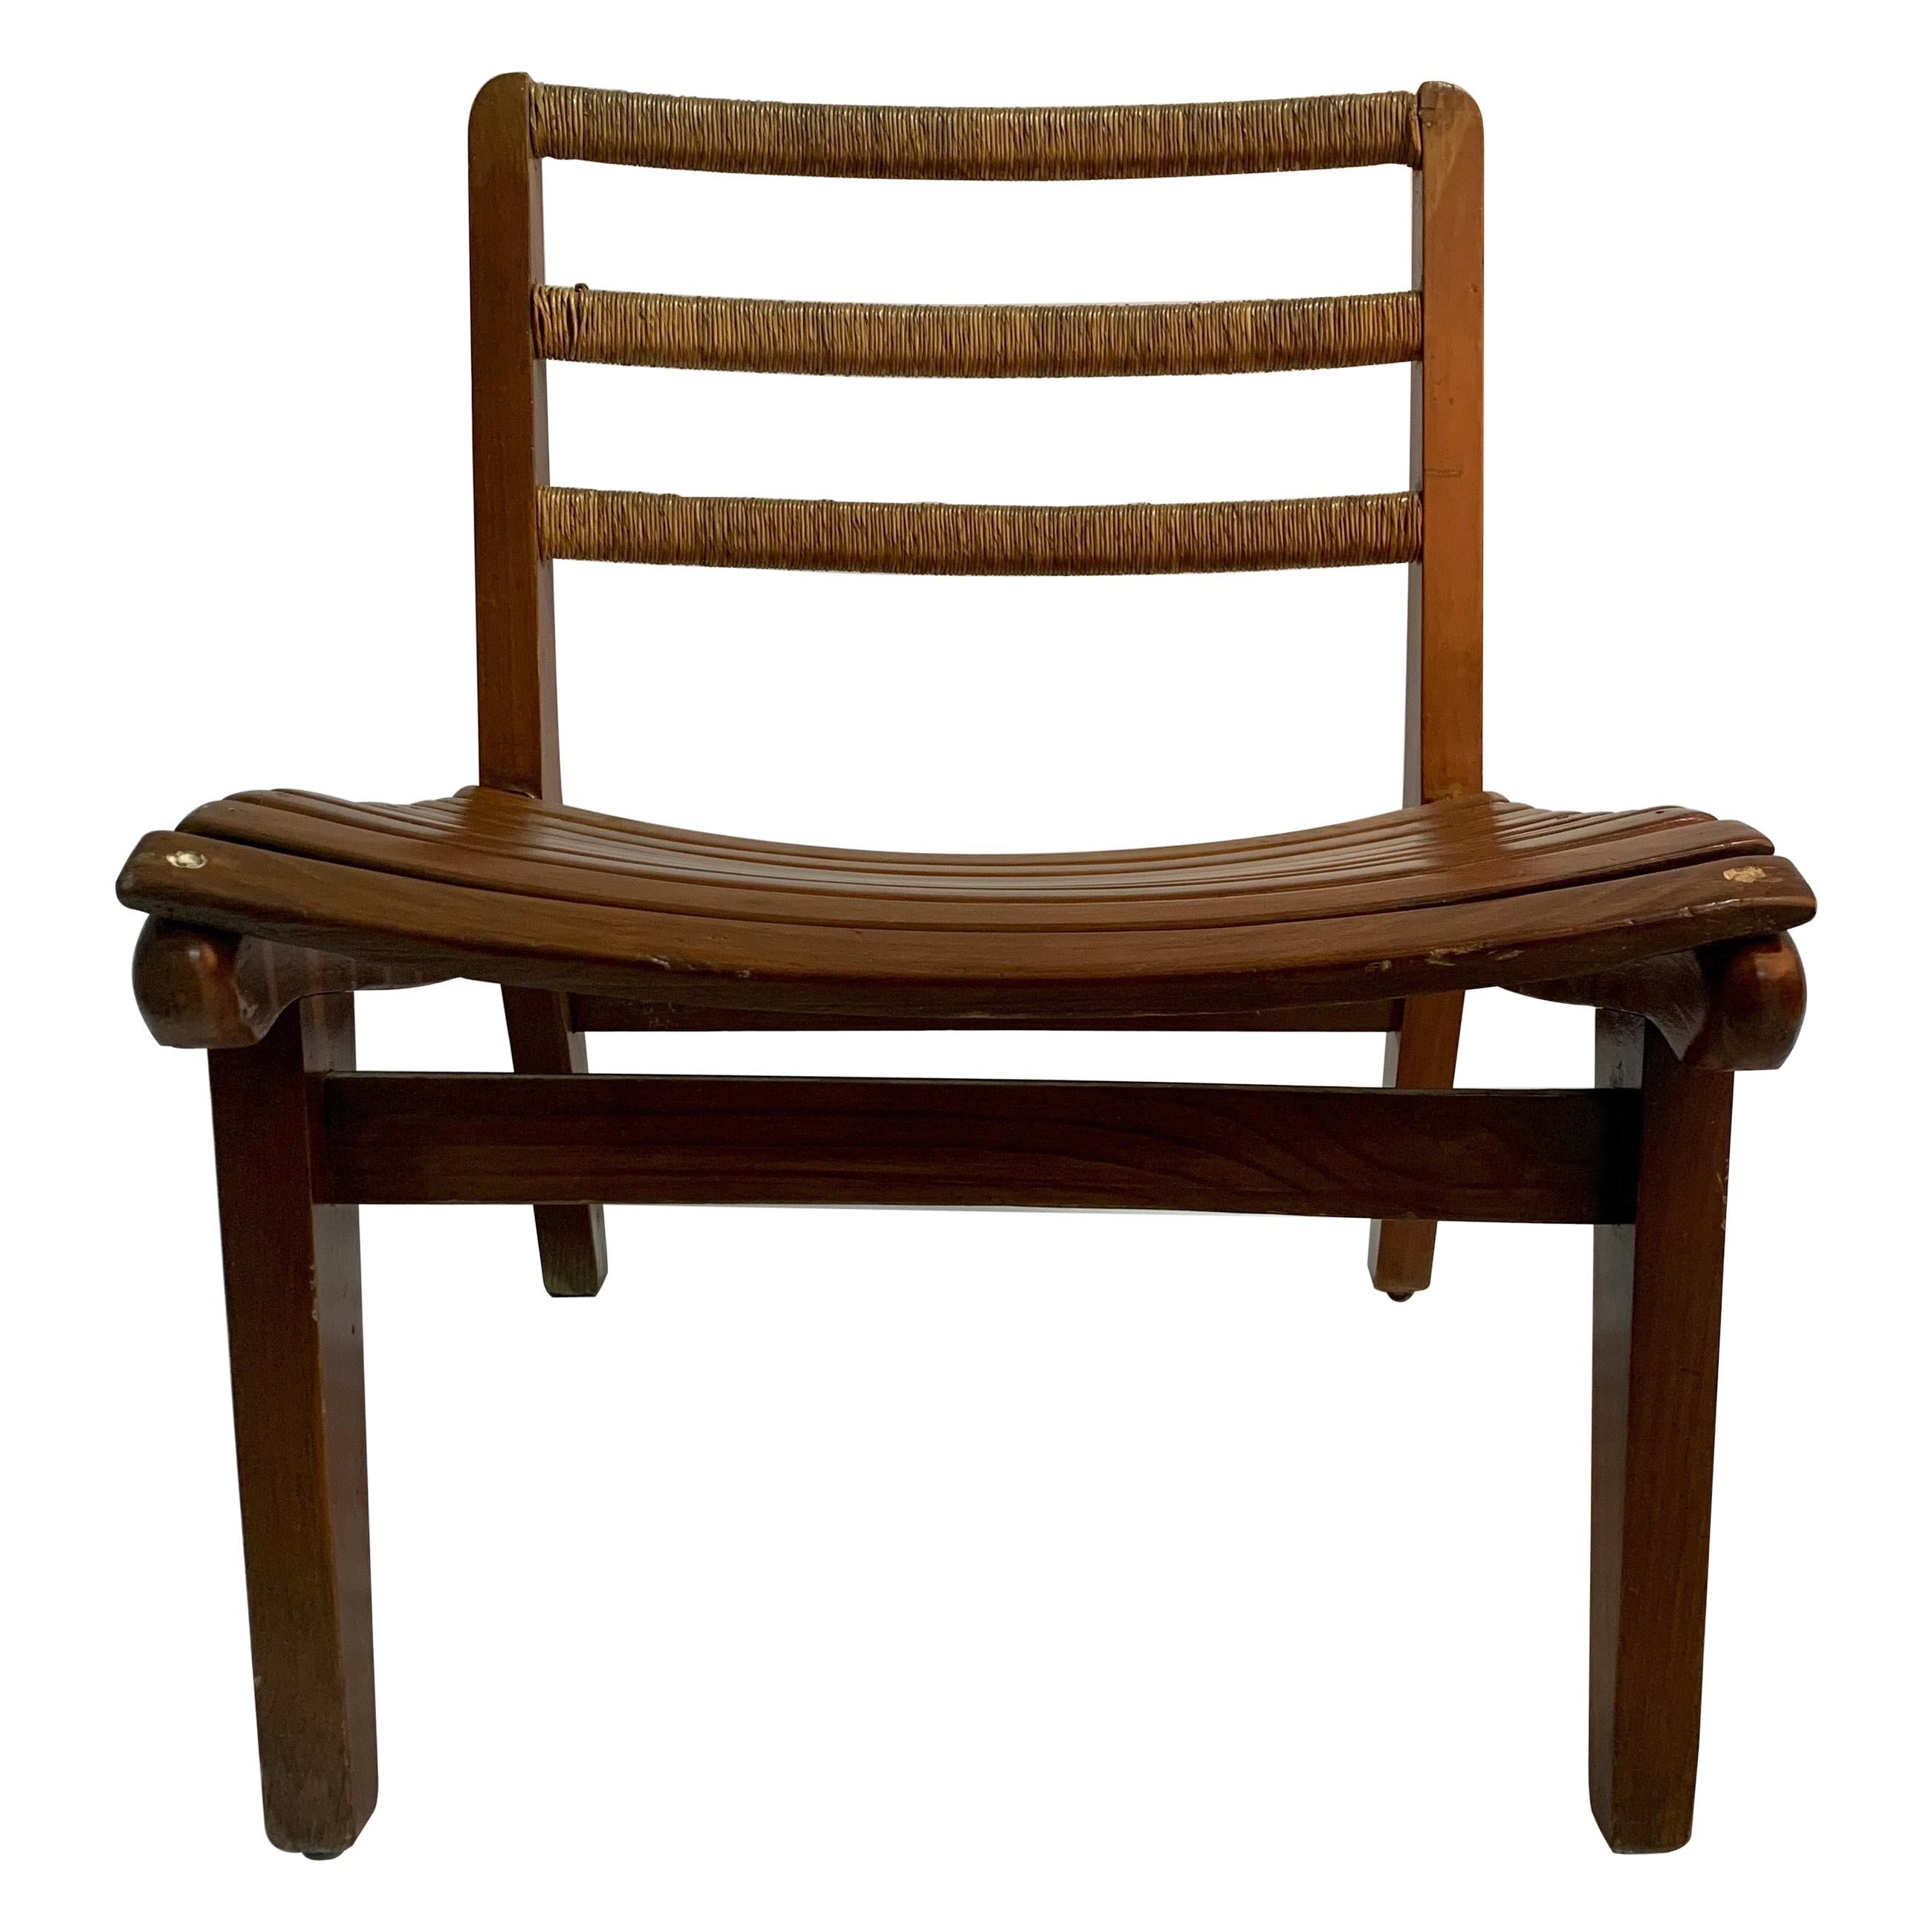 Michael van Beuren Original Lounge Chair for Domus